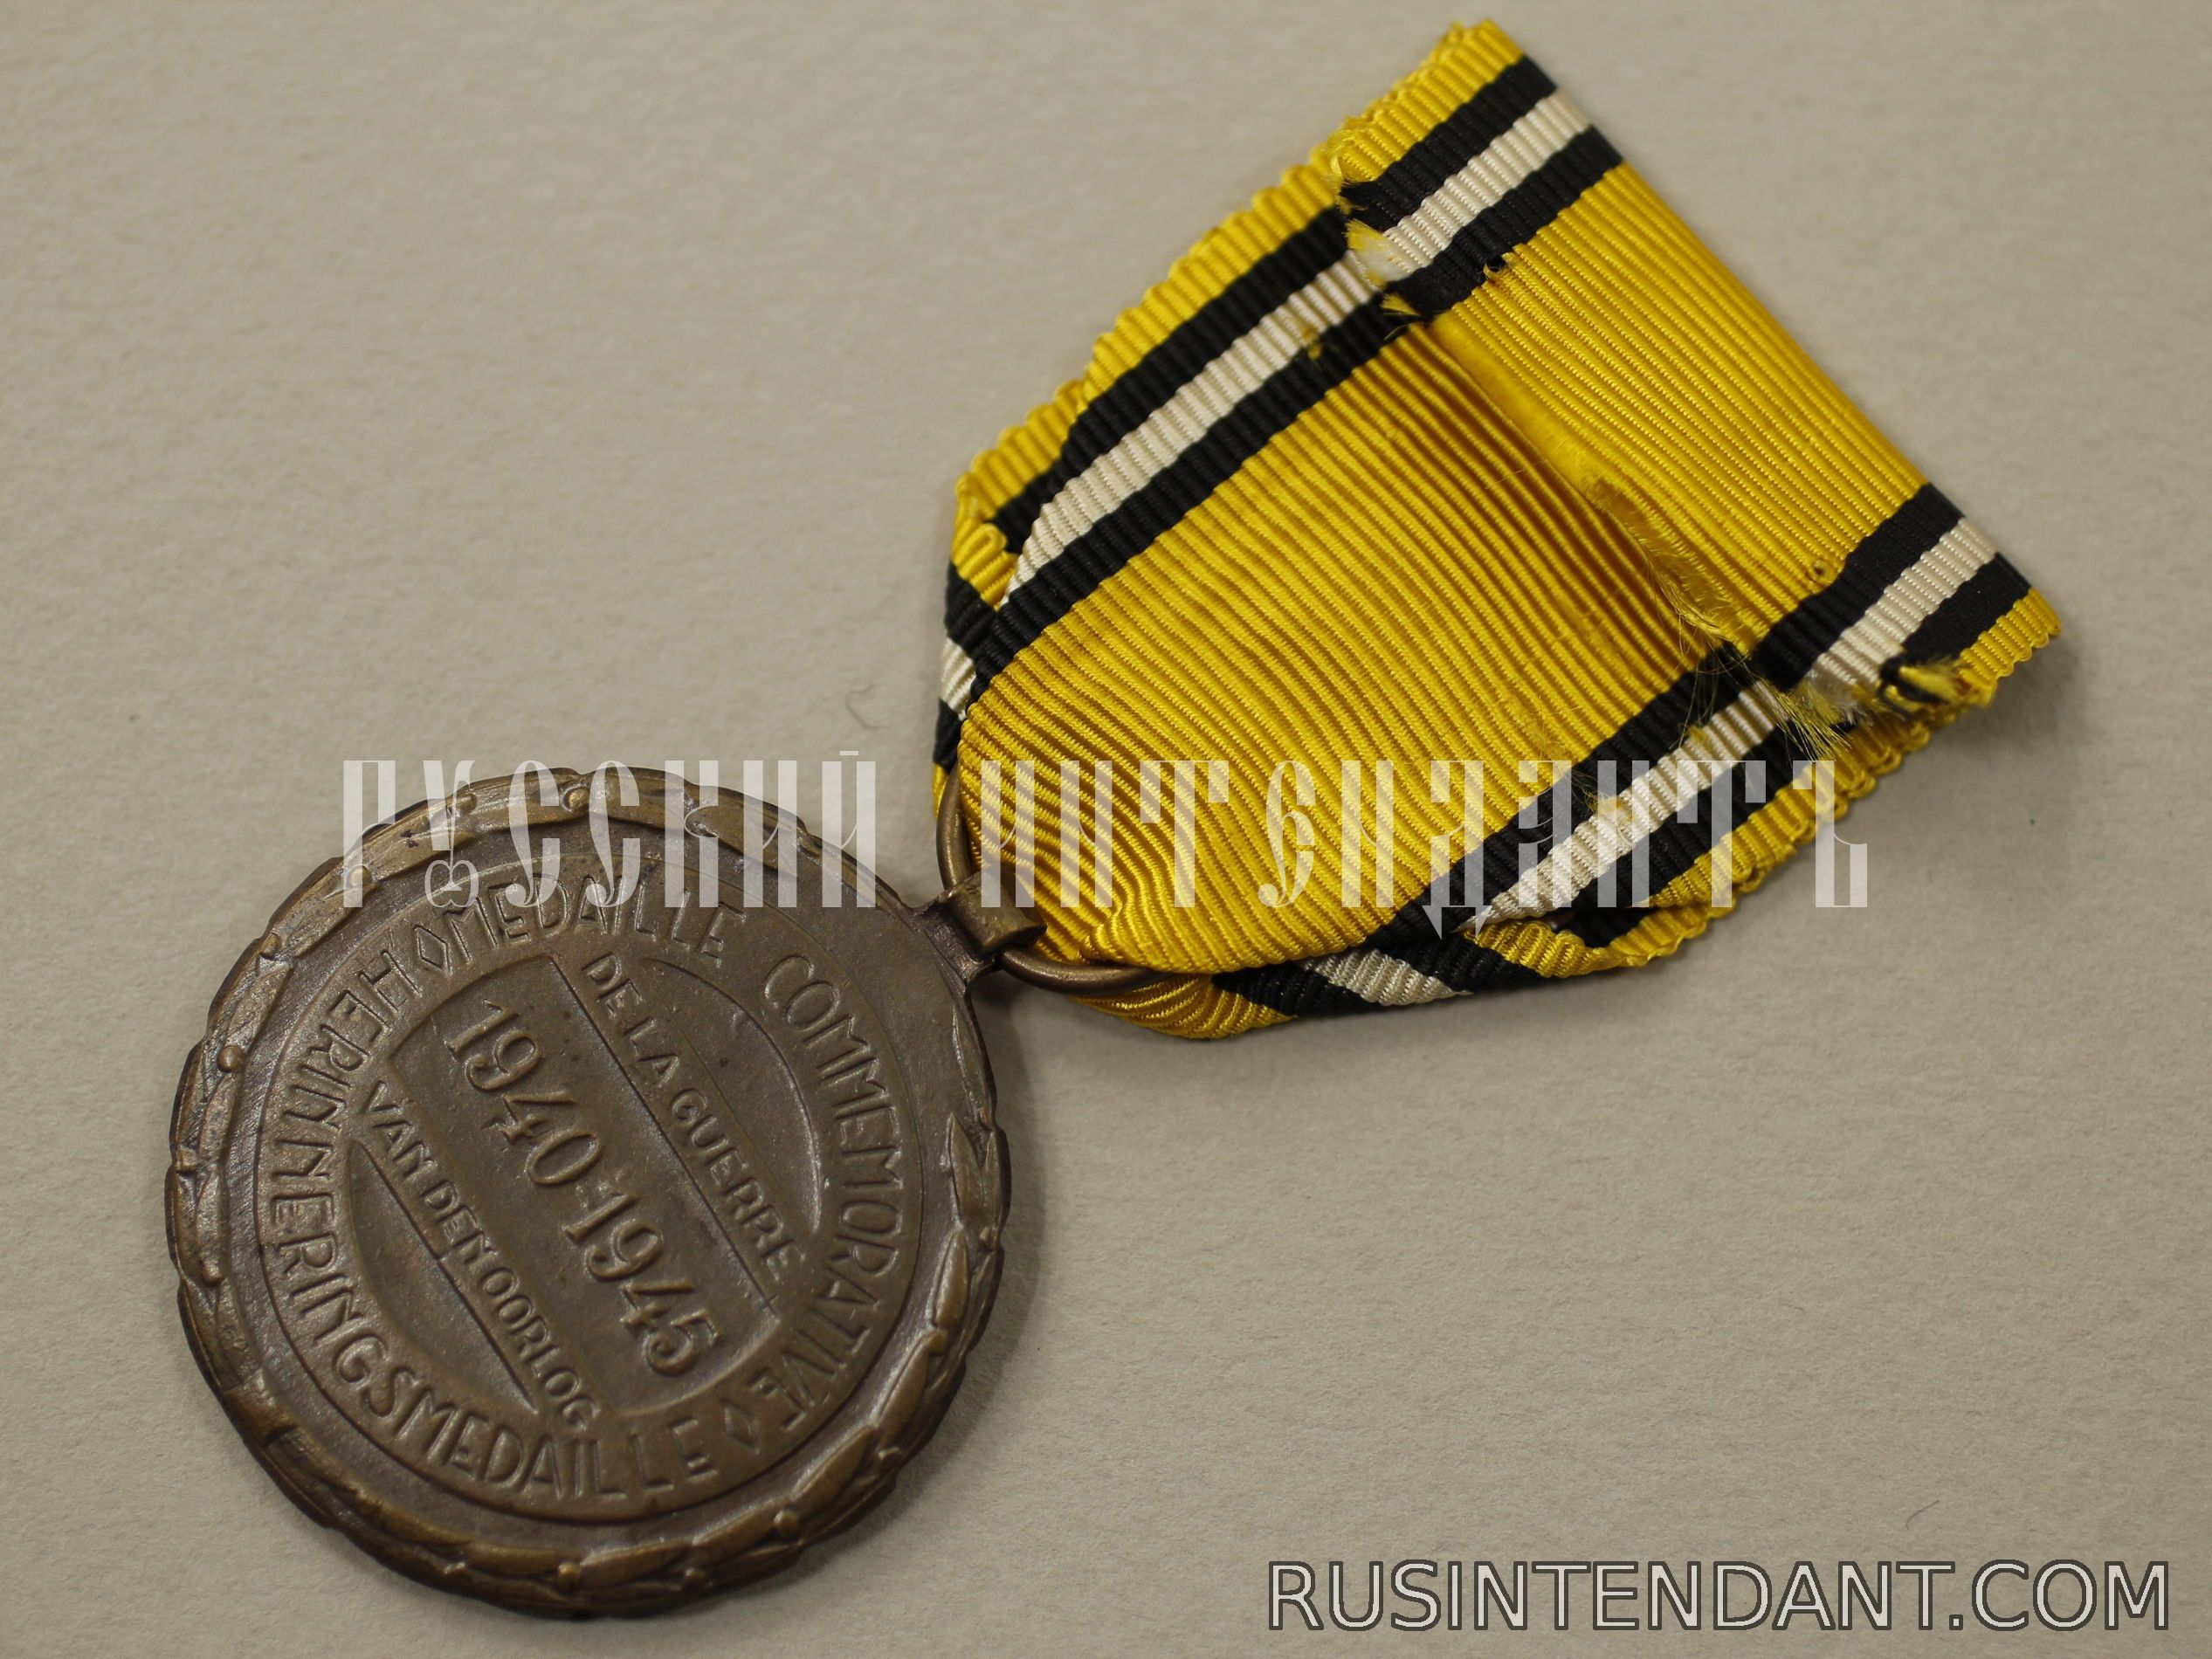 Фото 4: Бельгийская медаль "В память войны 1940-1945" 